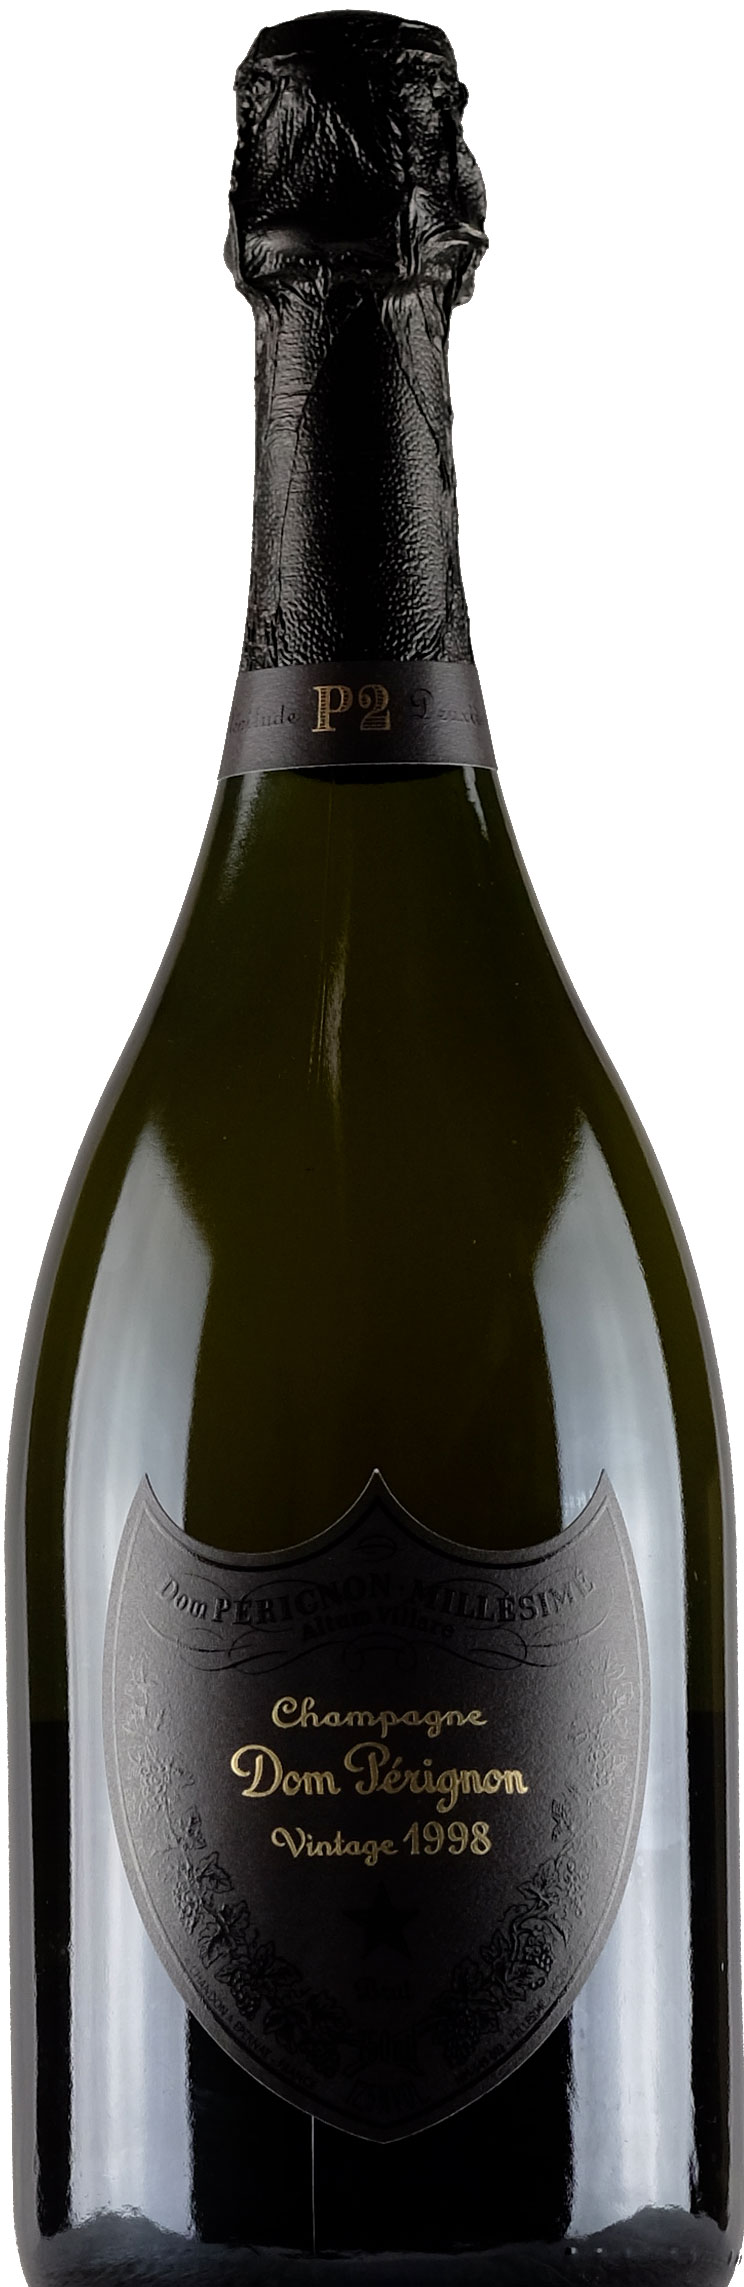 Champagne Dom Pérignon, coffrets, bruts